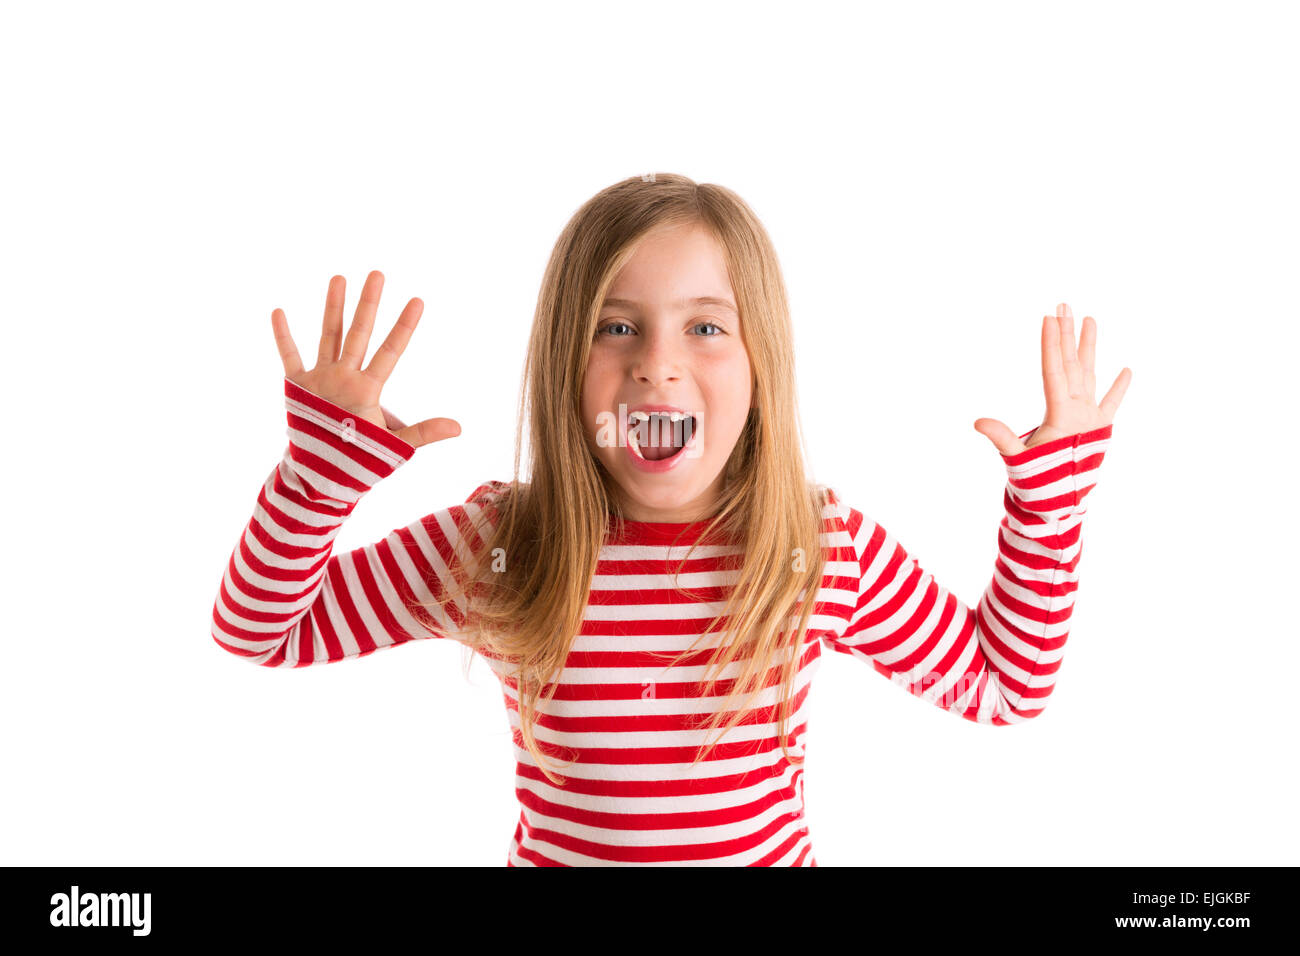 Blonden eingerückten Kind Mädchen offen Mounth und Hände glücklichen Ausdruck Geste auf weiß Stockfoto